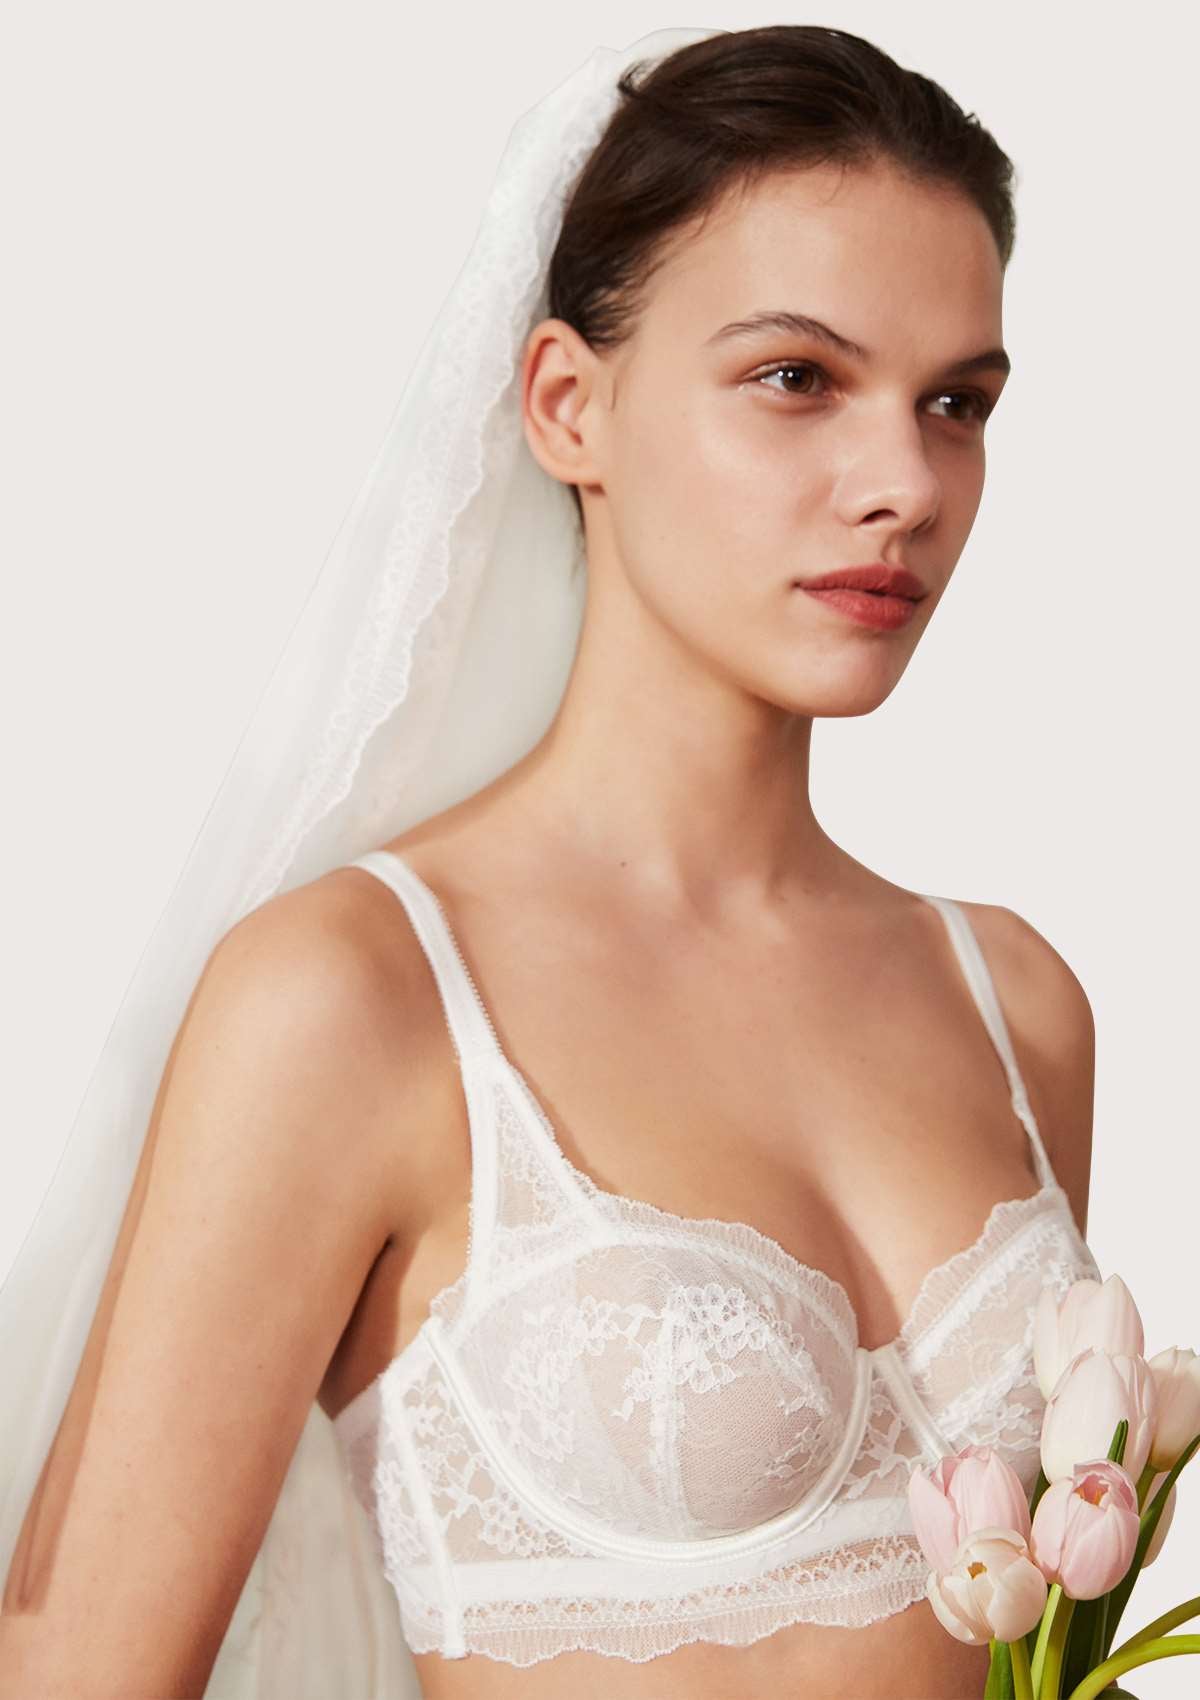 HSIA Floral Lace Unlined Bridal Romantic Balconette Bra Panty Set  - White / 38 / C